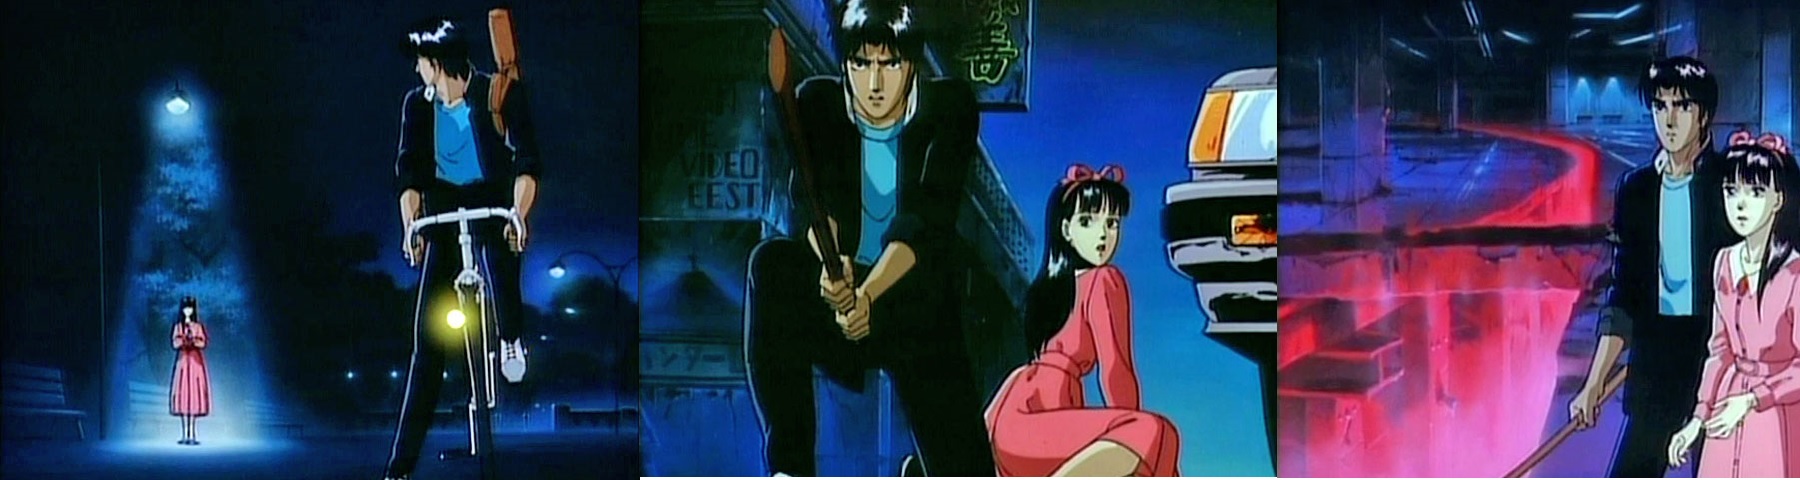 Kyoya and Sayaka venture into Shinjuku in Demon City Shinjuku (1988)`